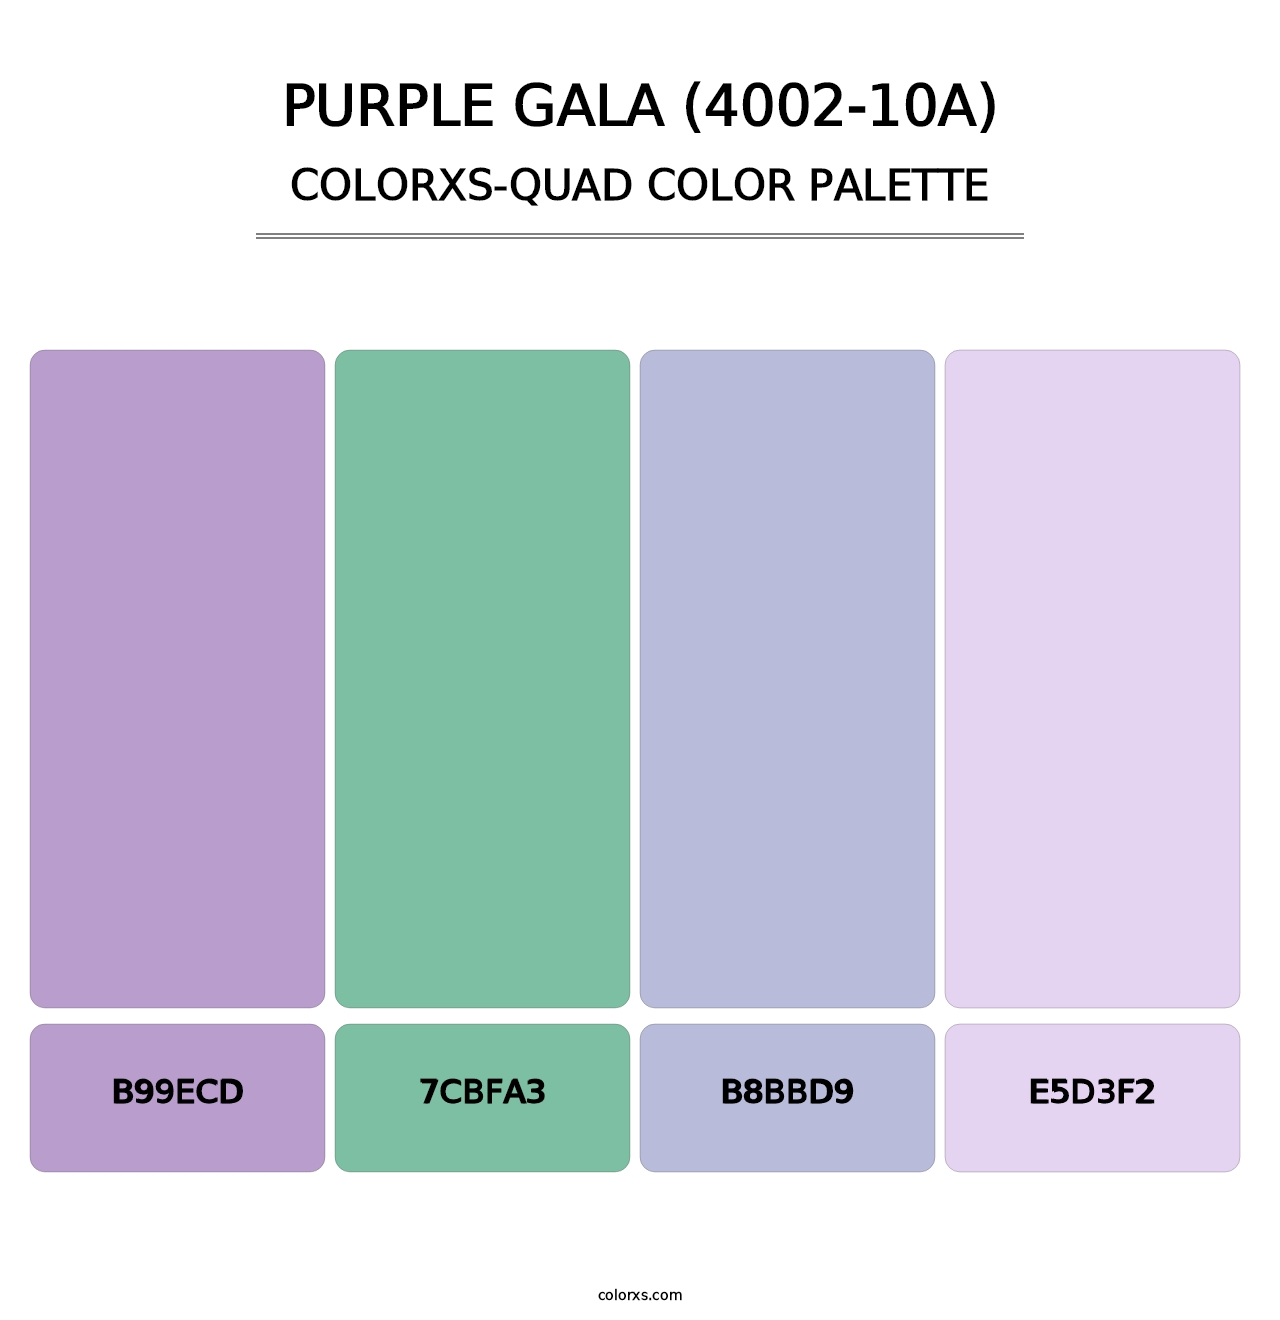 Purple Gala (4002-10A) - Colorxs Quad Palette